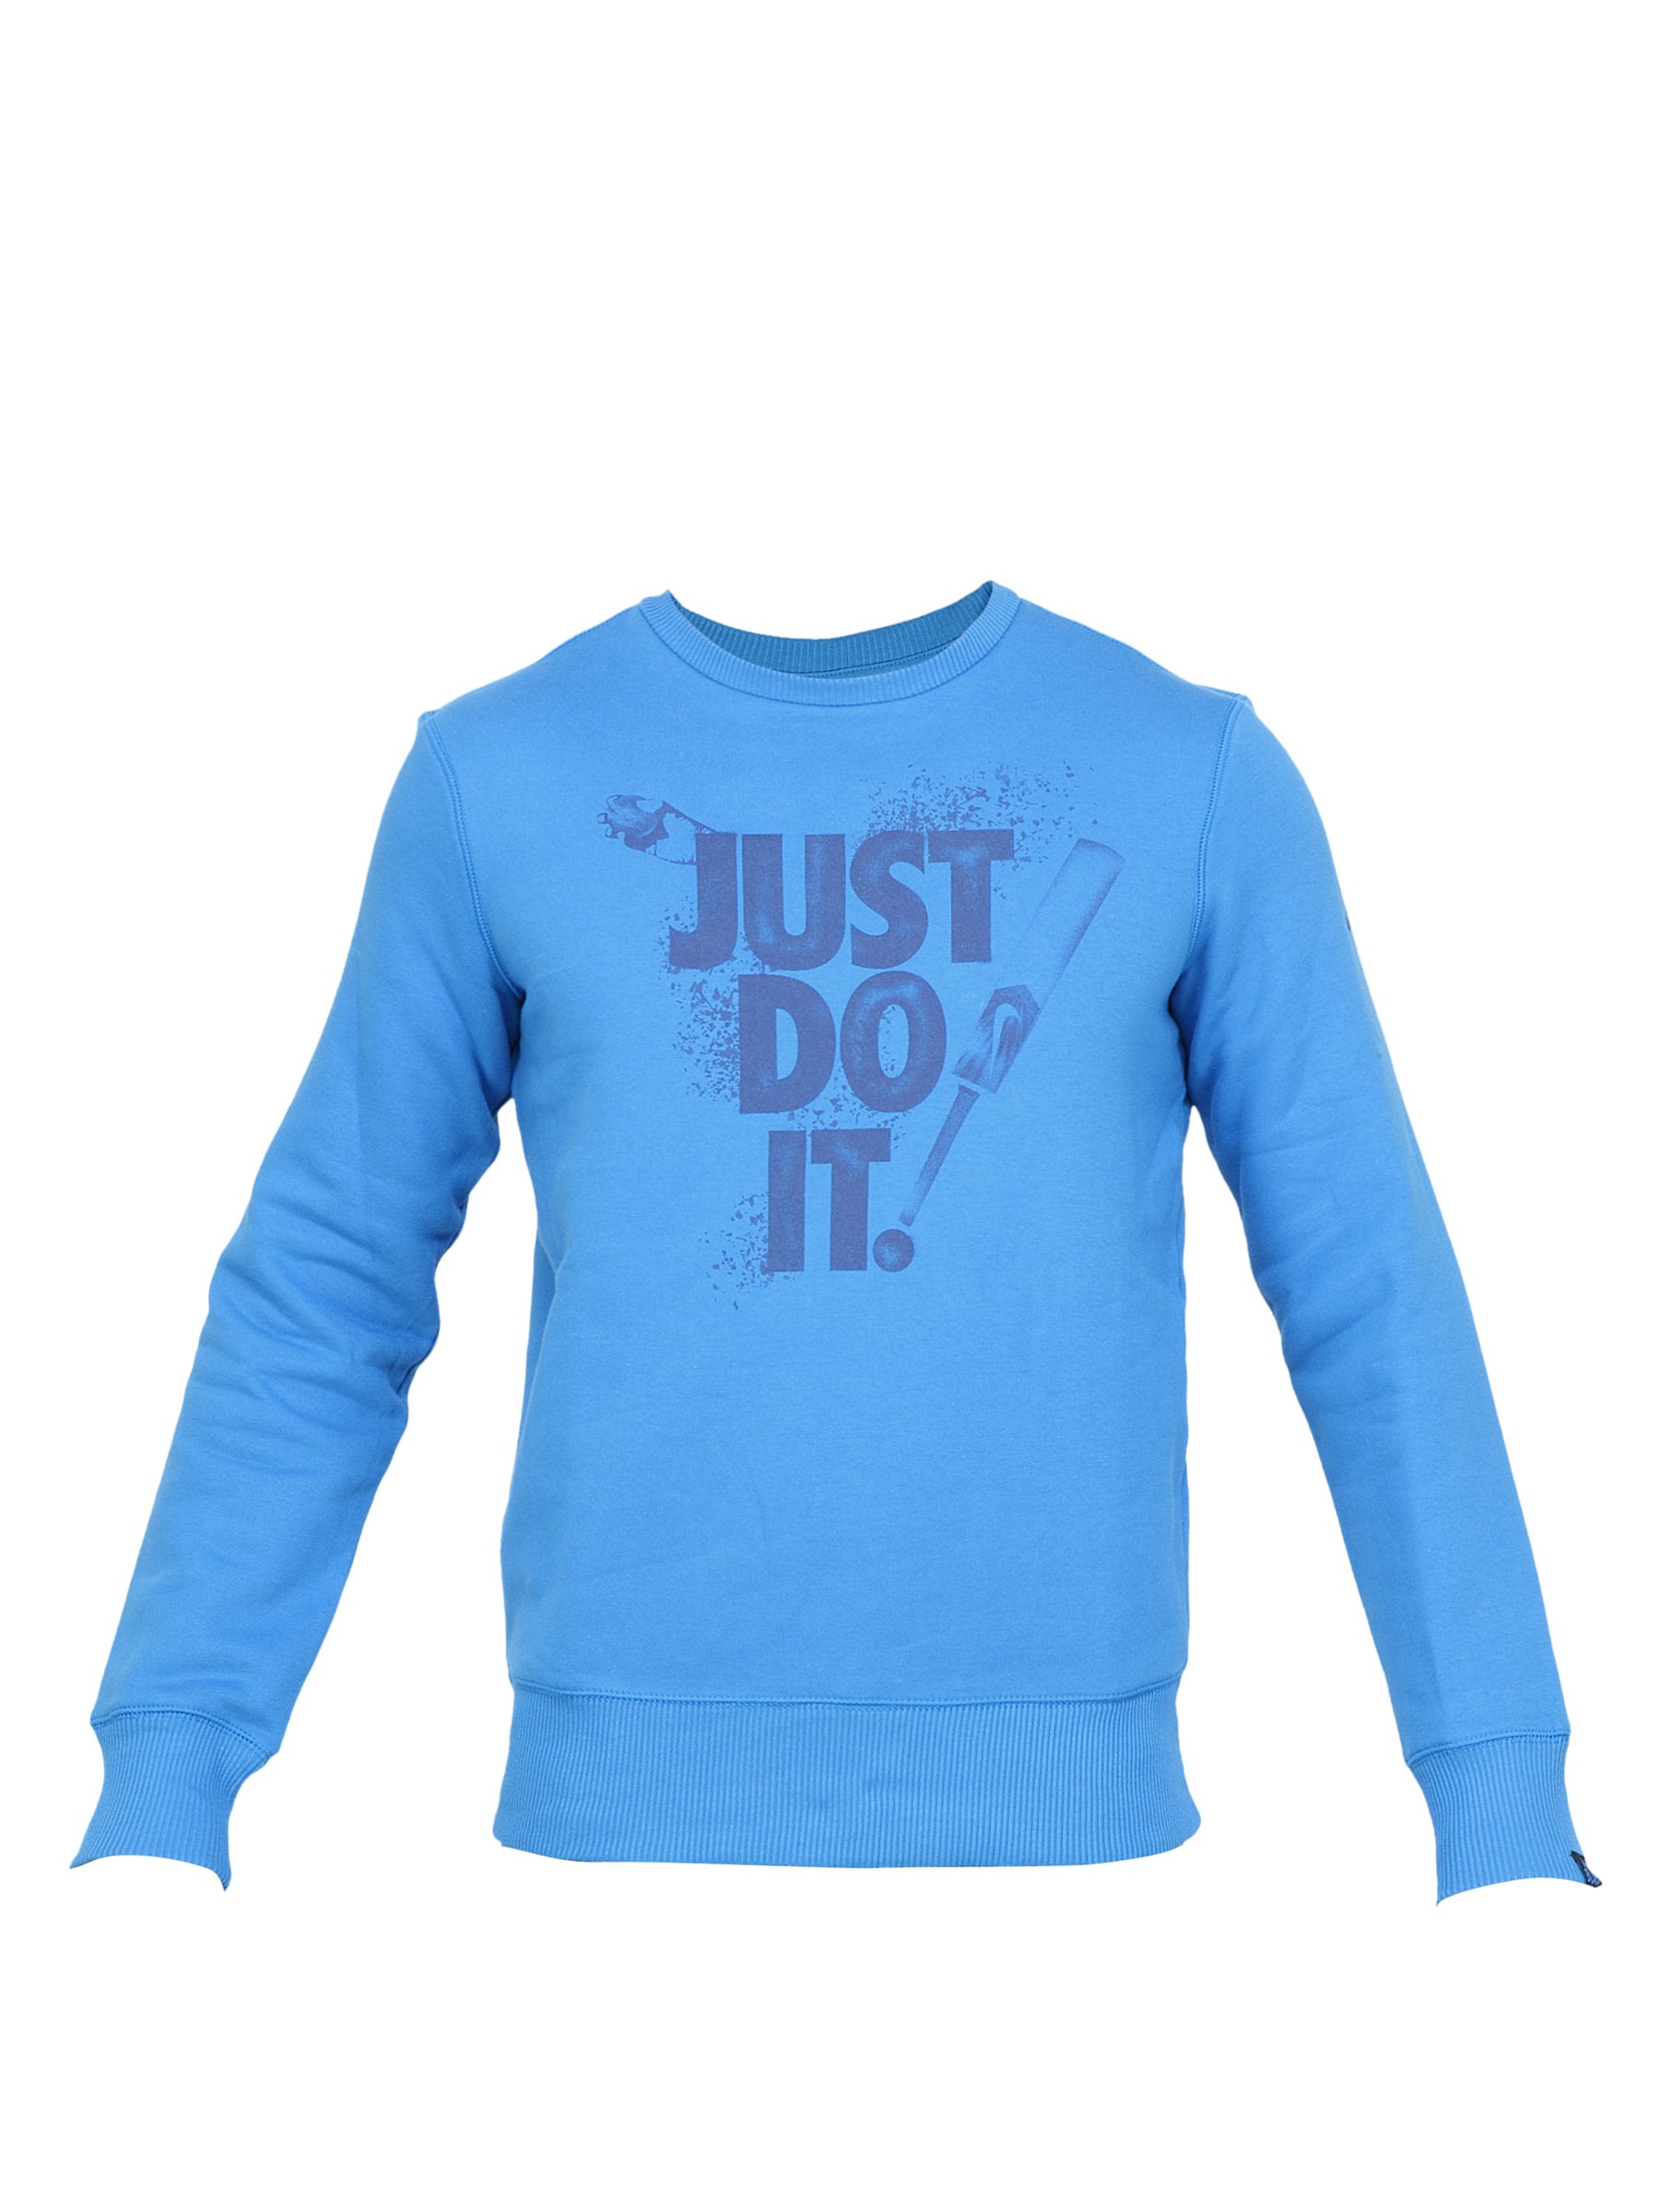 Nike Men Printed Blue Sweatshirt